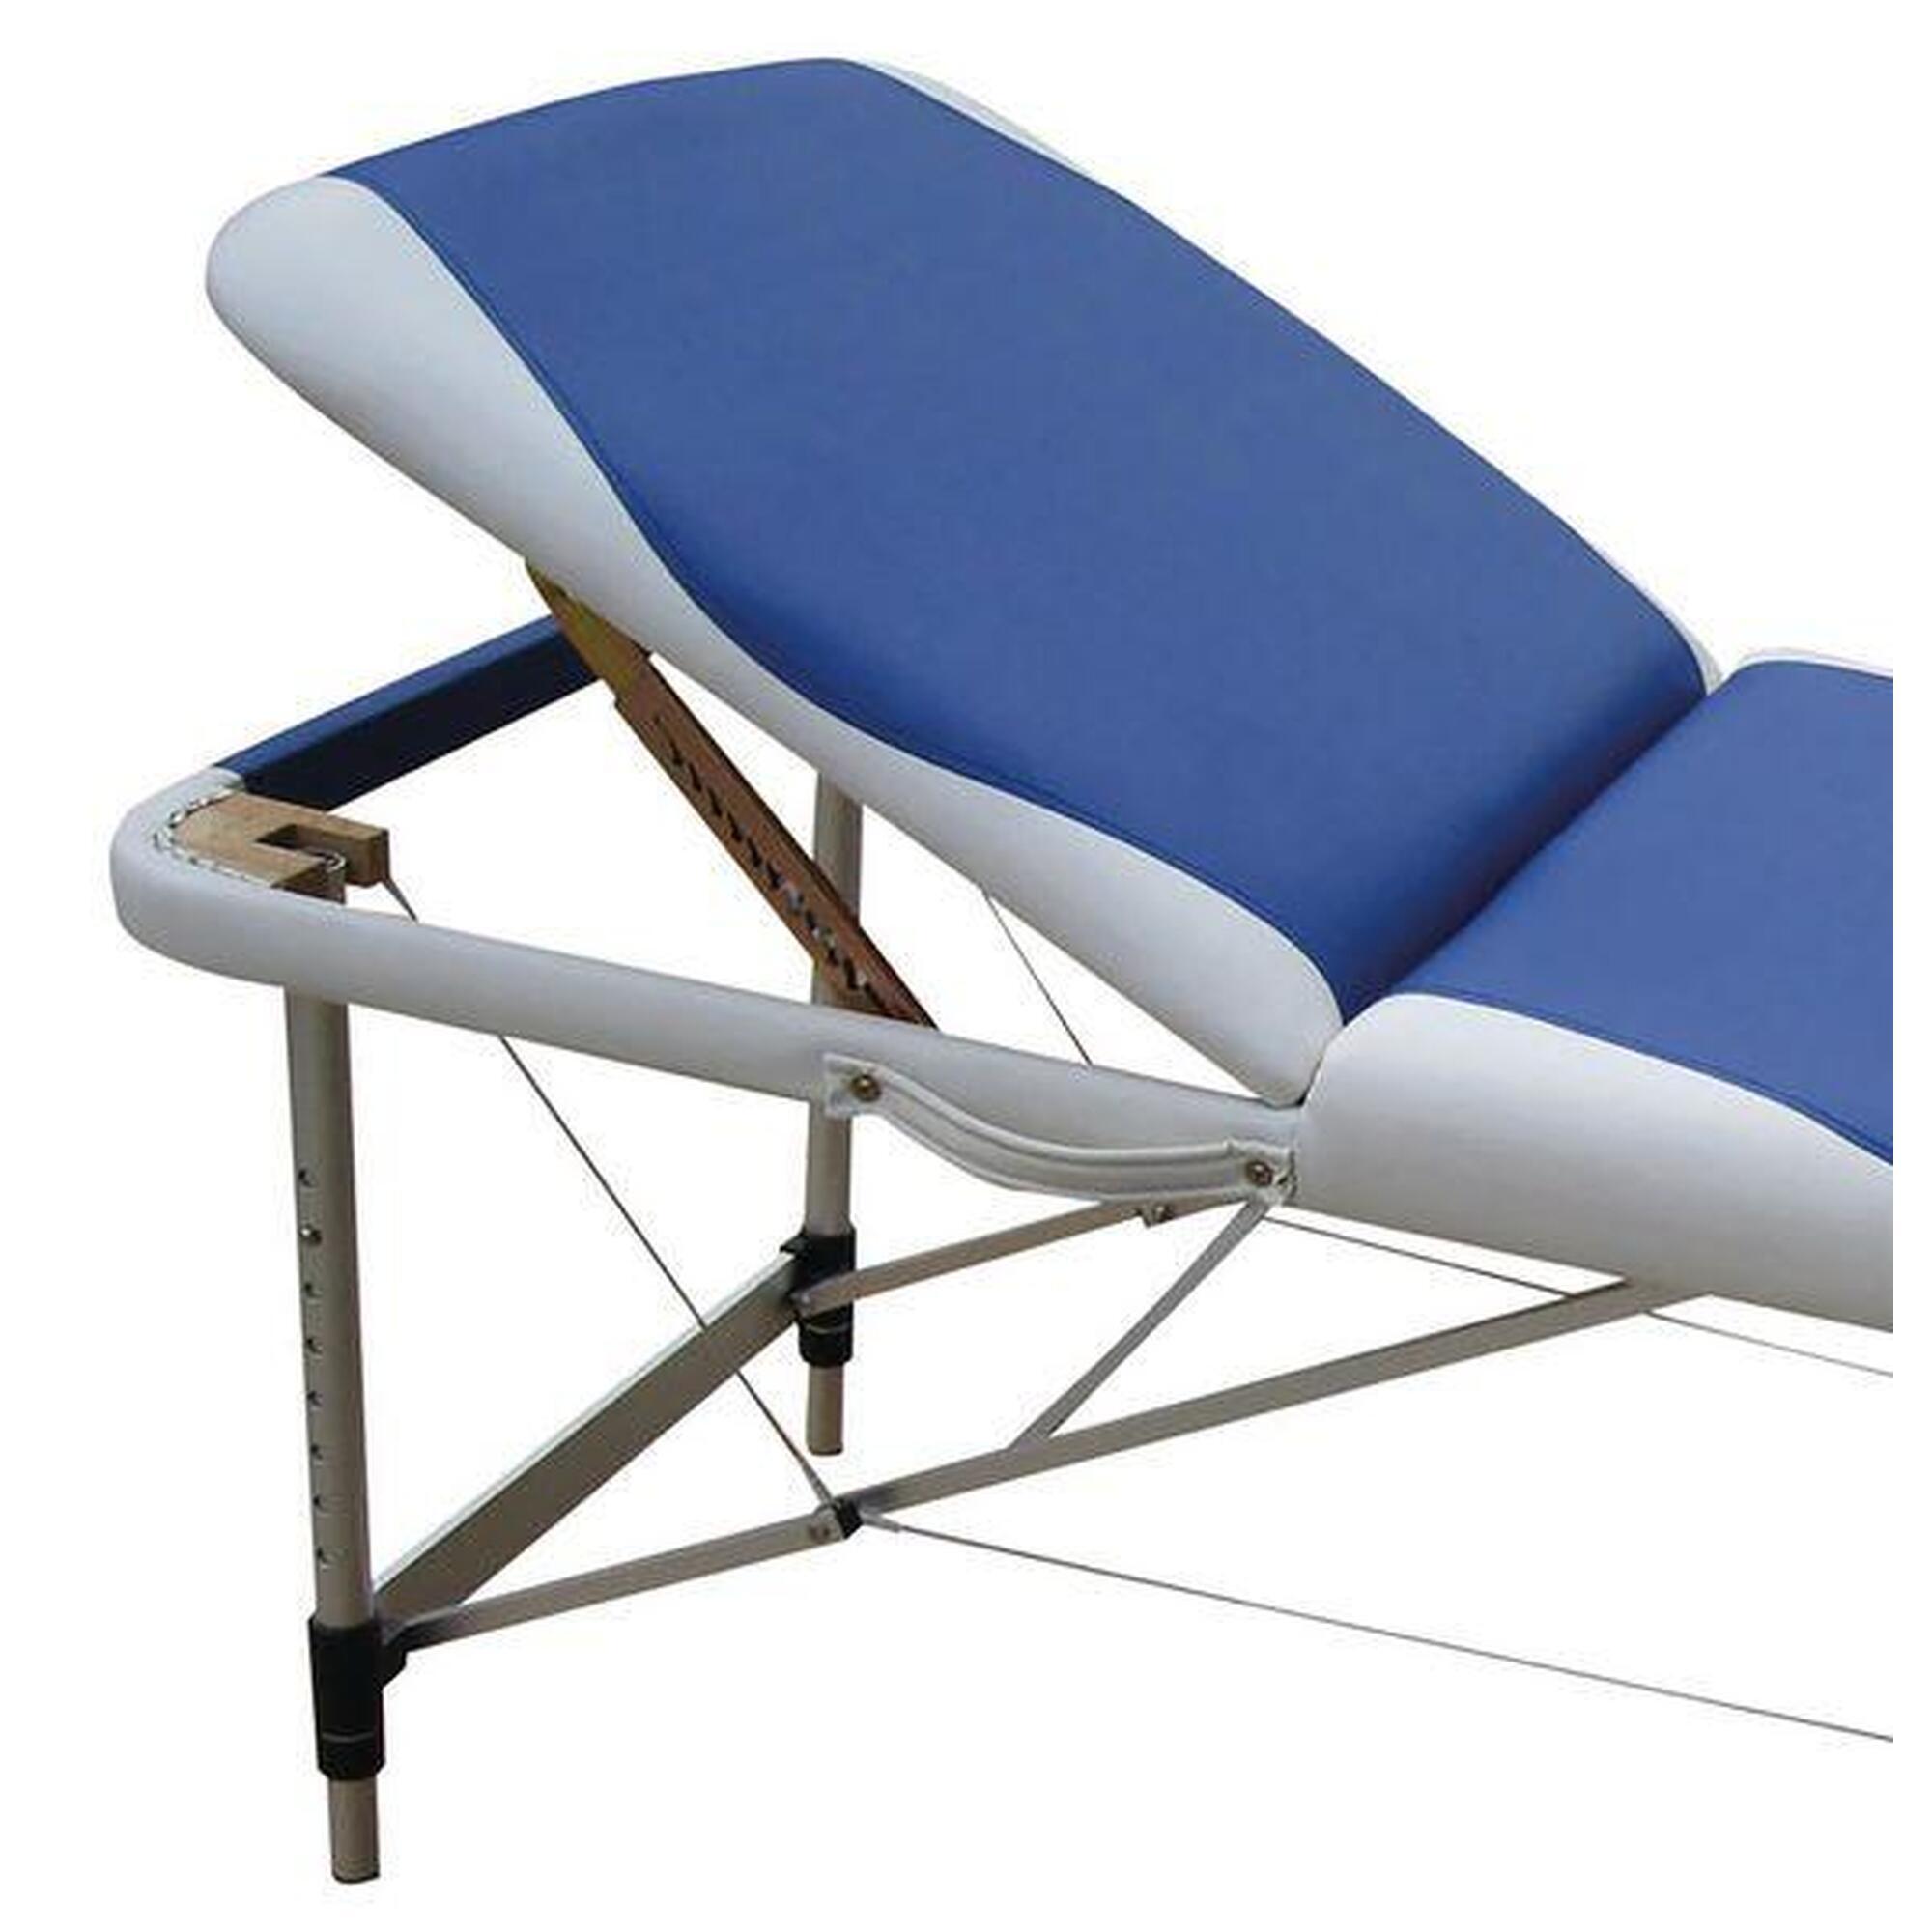 Table de massage pliable avec sac de transport